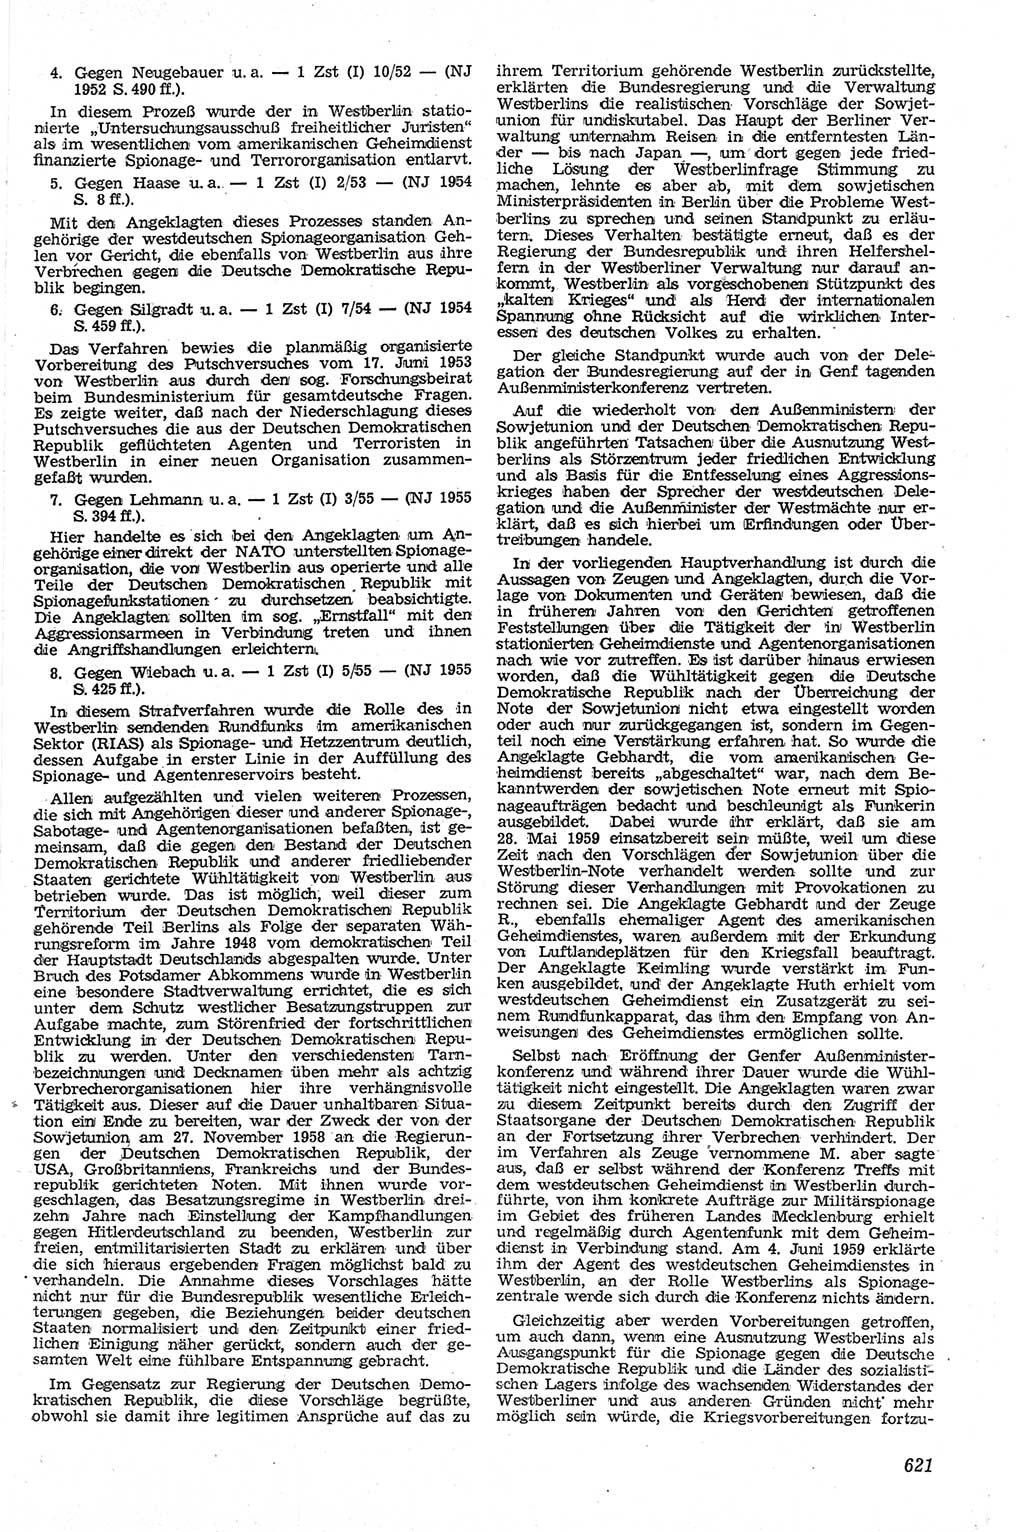 Neue Justiz (NJ), Zeitschrift für Recht und Rechtswissenschaft [Deutsche Demokratische Republik (DDR)], 13. Jahrgang 1959, Seite 621 (NJ DDR 1959, S. 621)